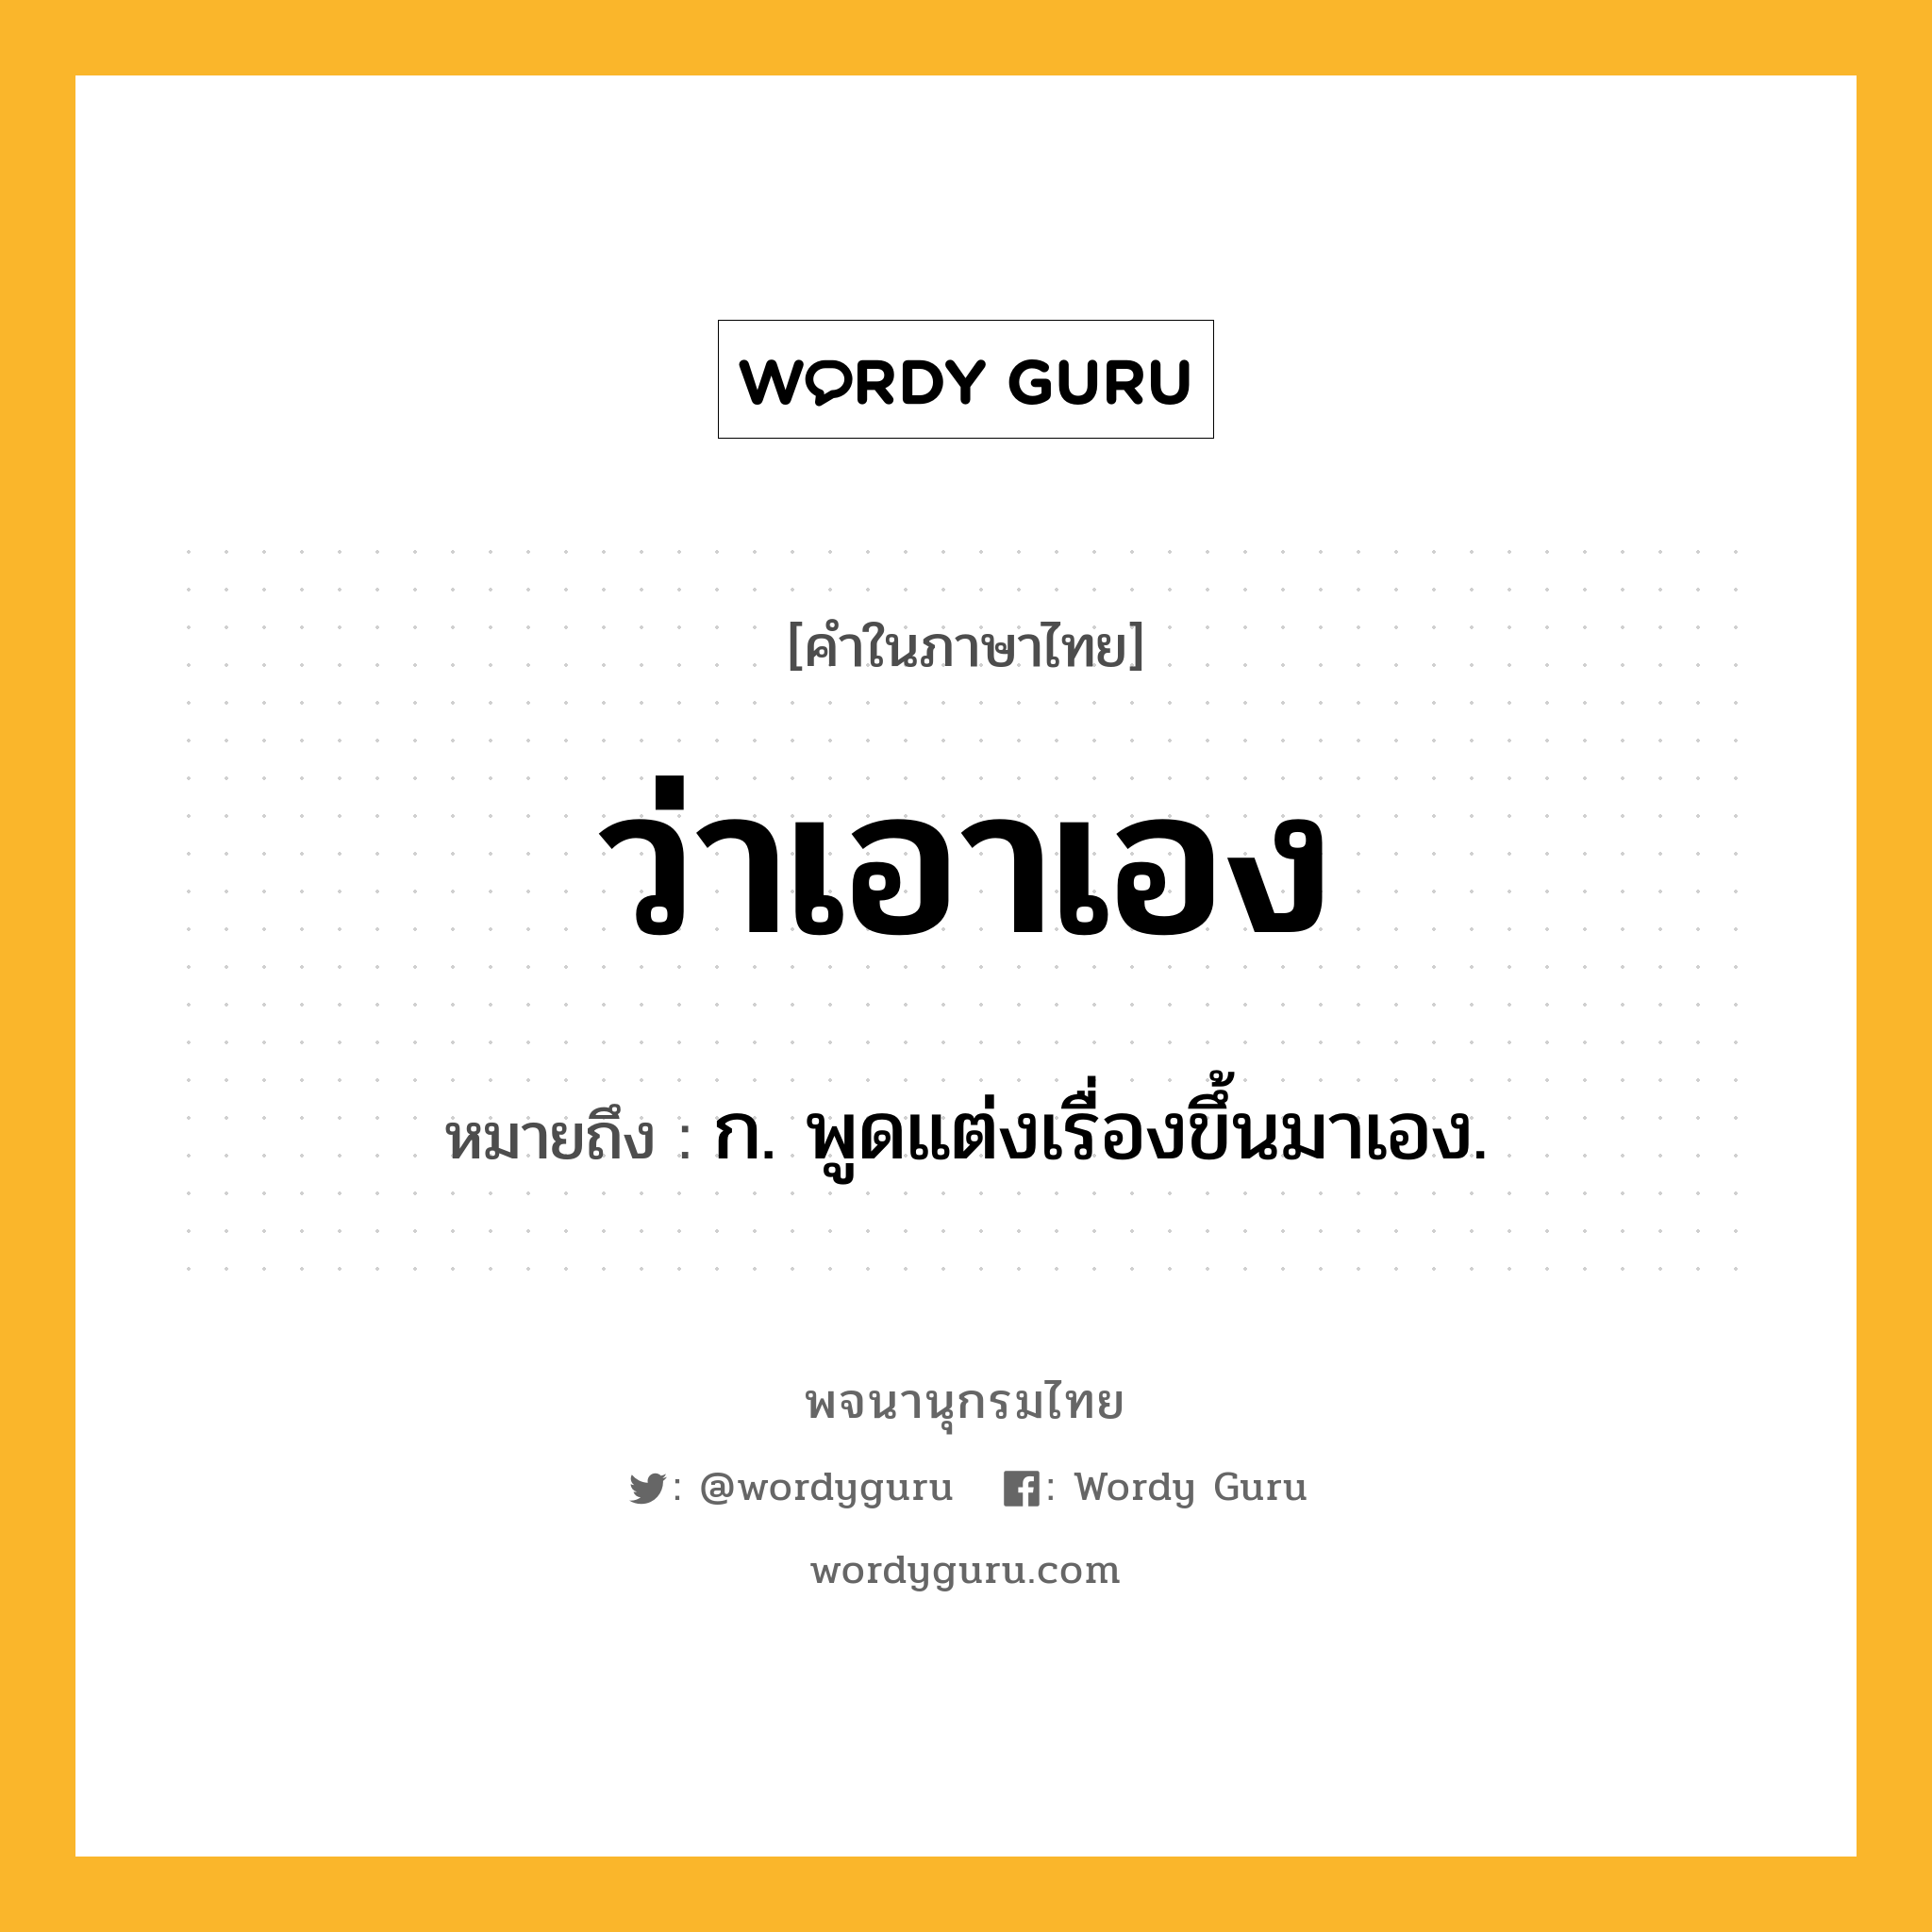 ว่าเอาเอง หมายถึงอะไร?, คำในภาษาไทย ว่าเอาเอง หมายถึง ก. พูดแต่งเรื่องขึ้นมาเอง.